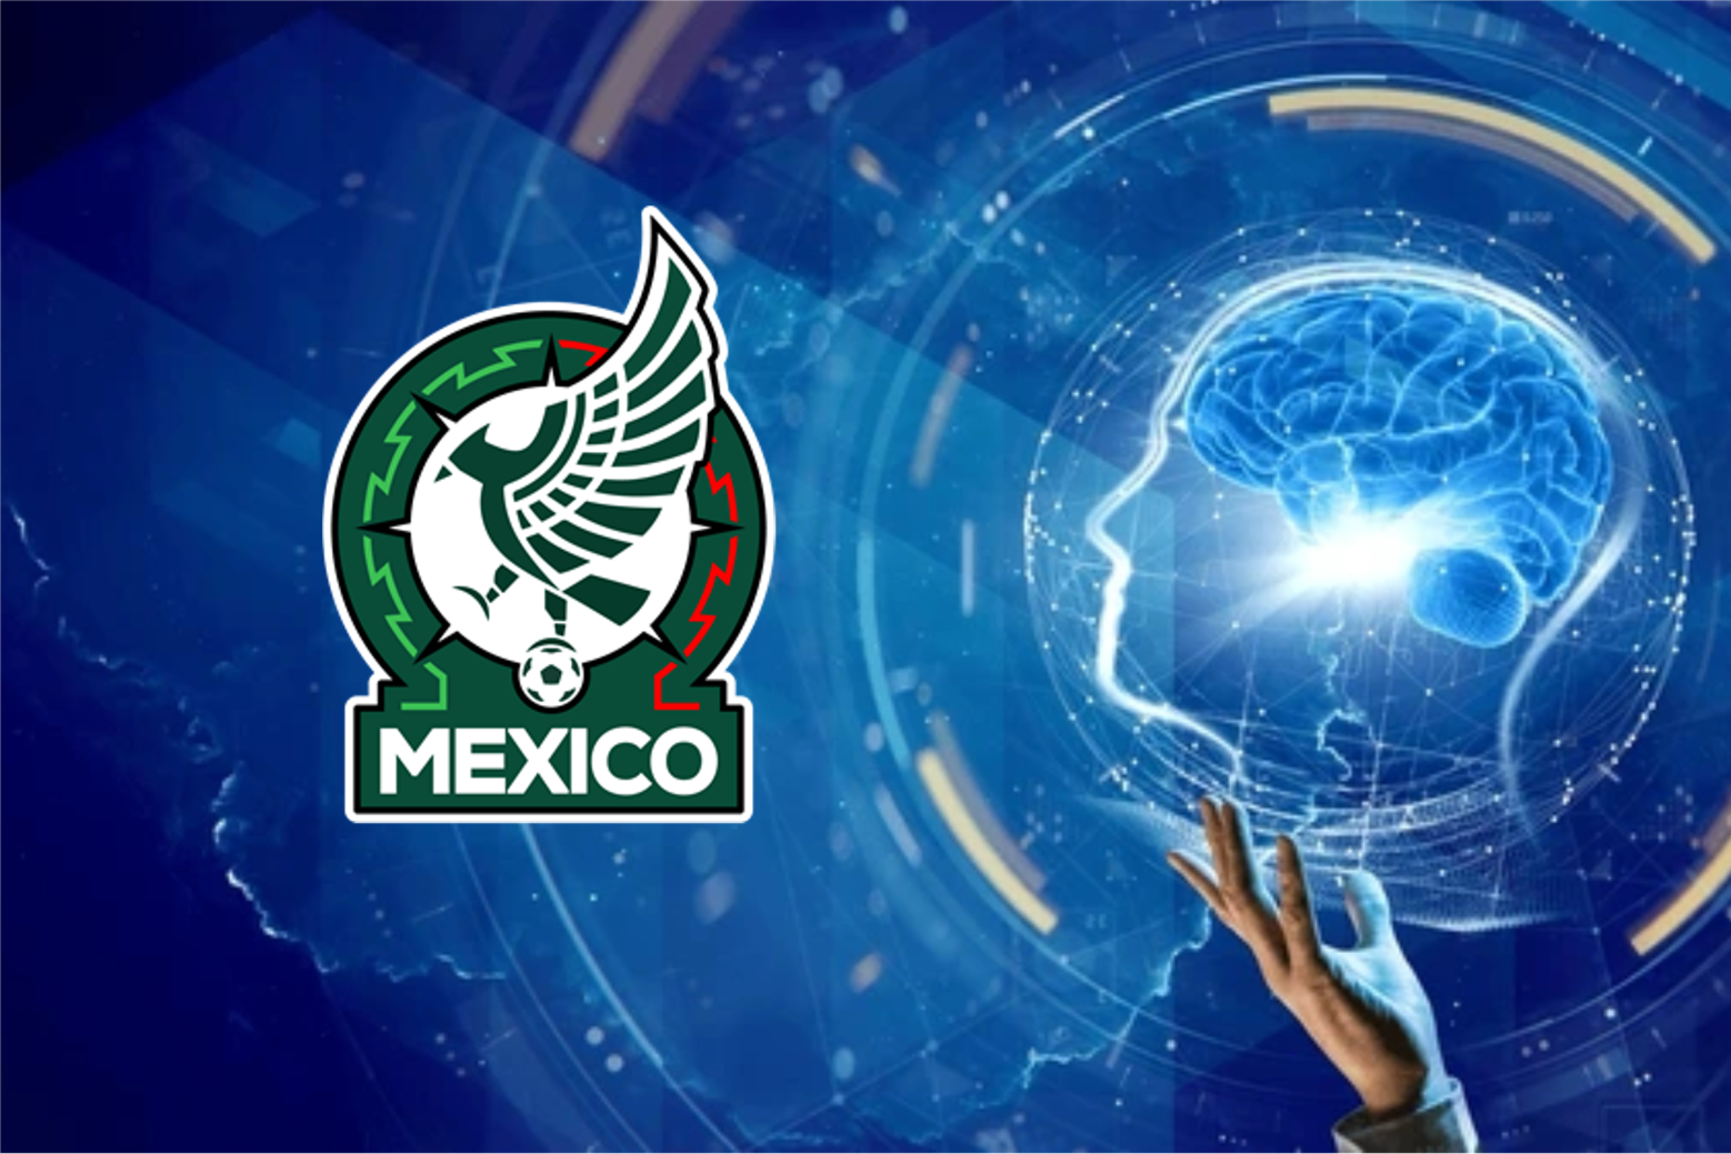 El jugador mexicano que tiene la mejor mentalidad, compensaba el talento, según Faitelson